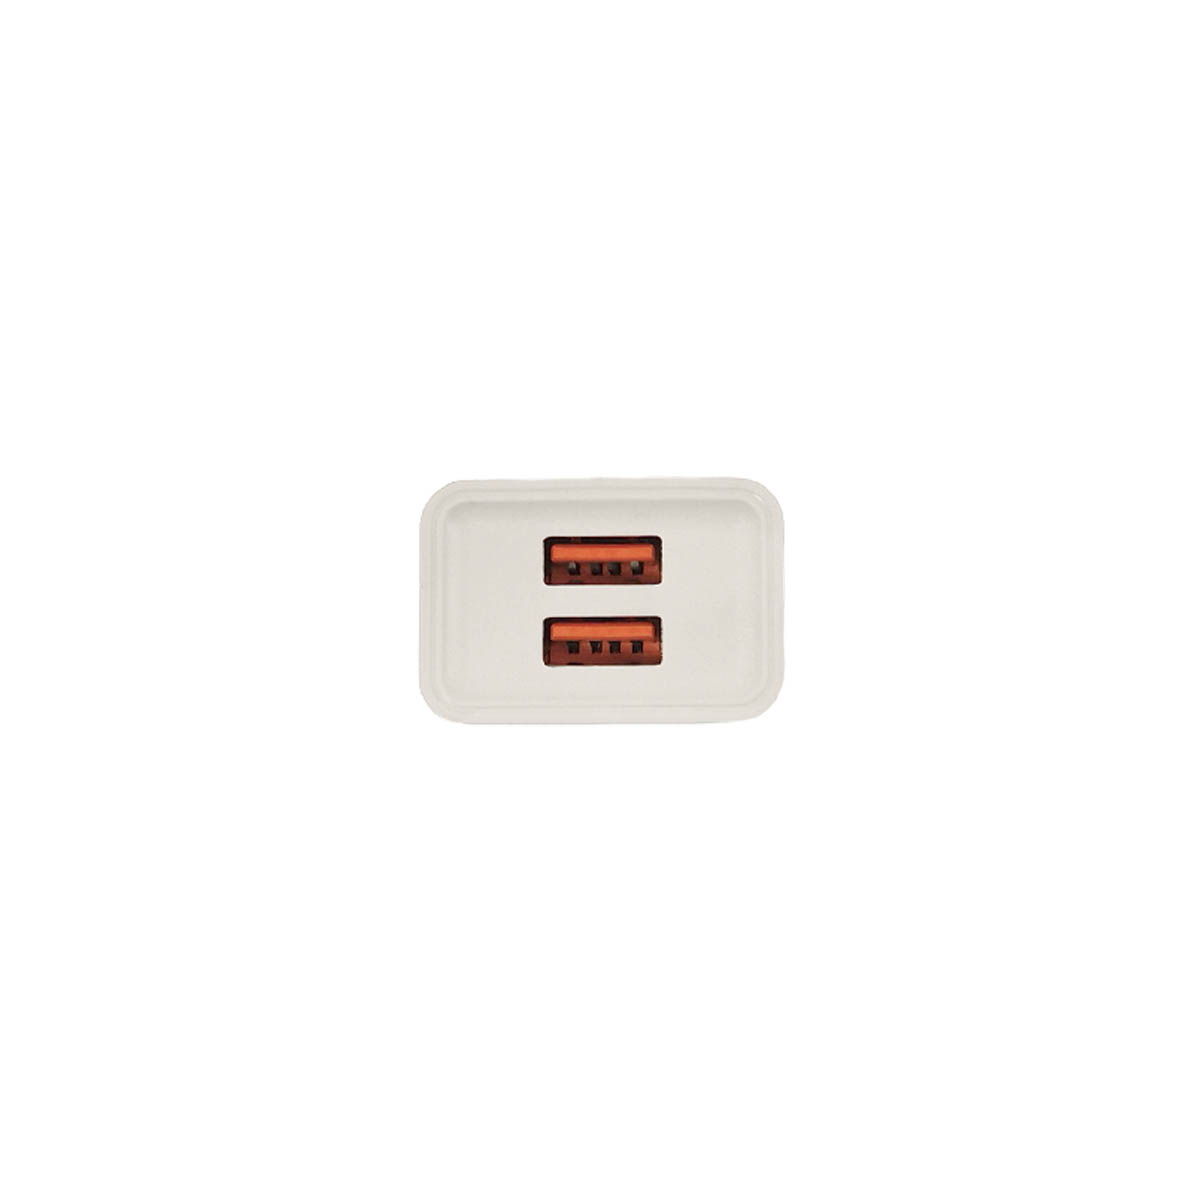 СЗУ (Сетевое зарядное устройство) DENMEN DC02, 2.1A, 2 USB, цвет белый